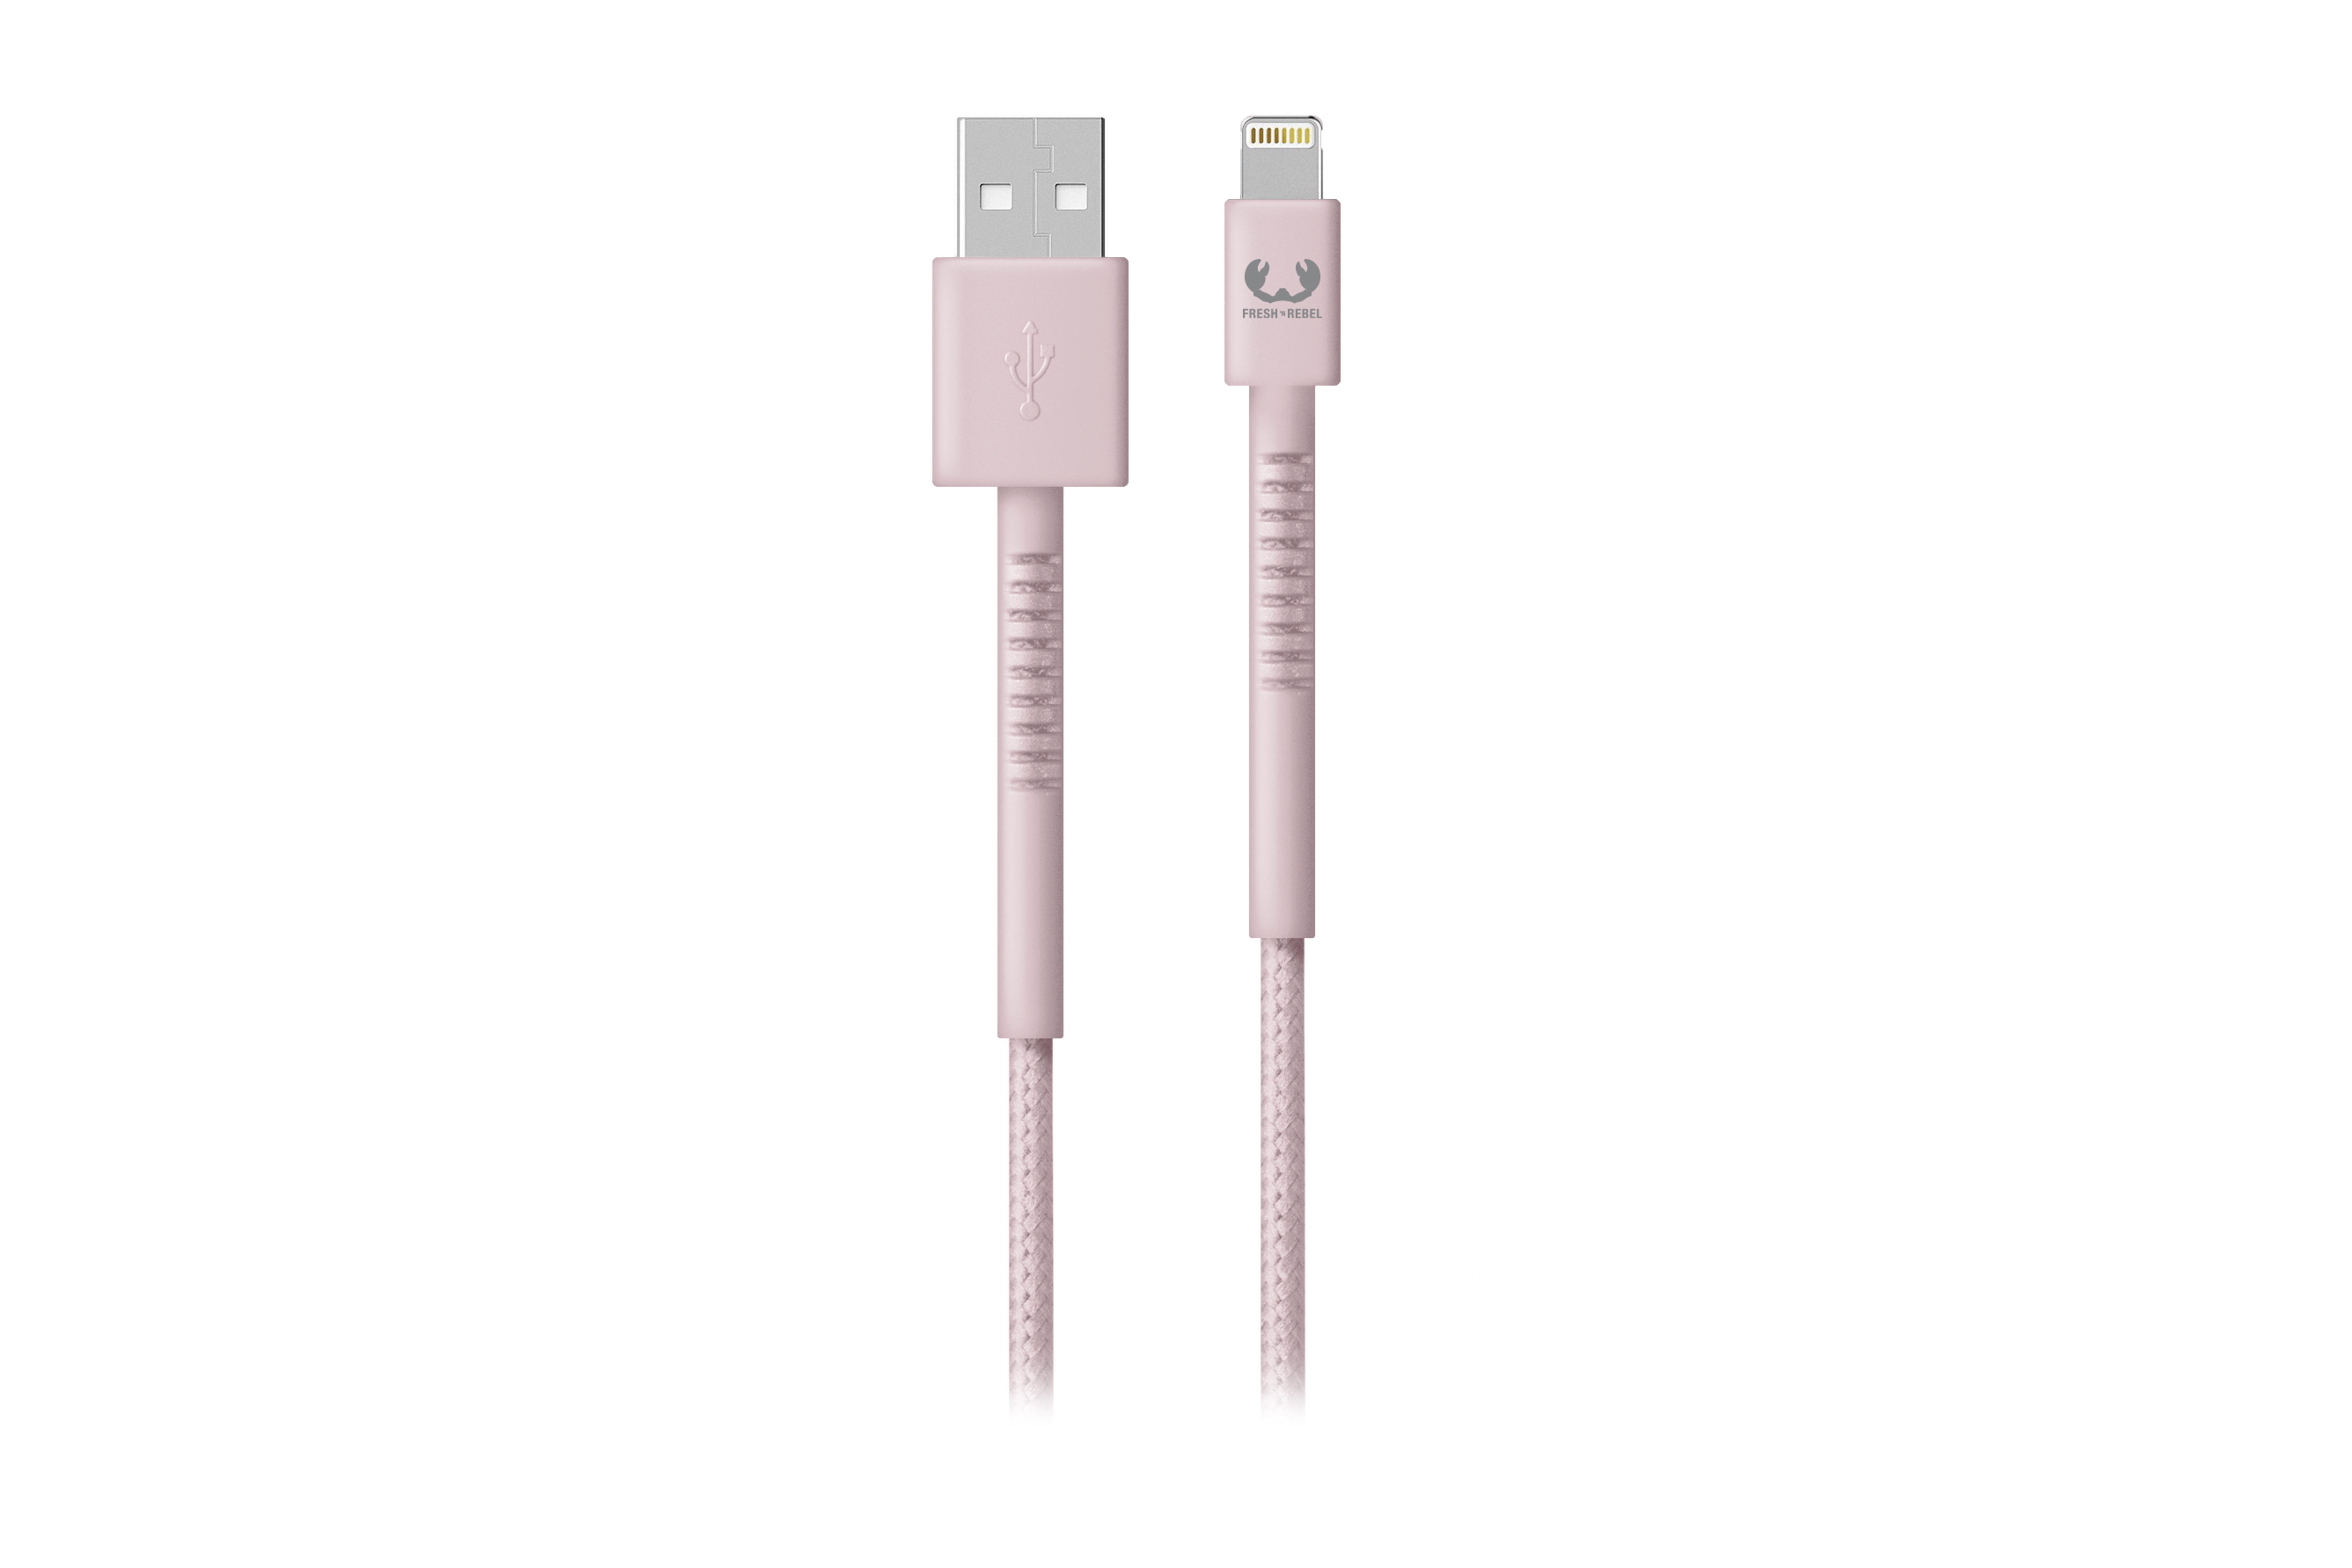 FRESH \'N REBEL USB Apple 2.0m, - Smokey Pink Fabriq - m, 2 cable Lightning Ladekabel